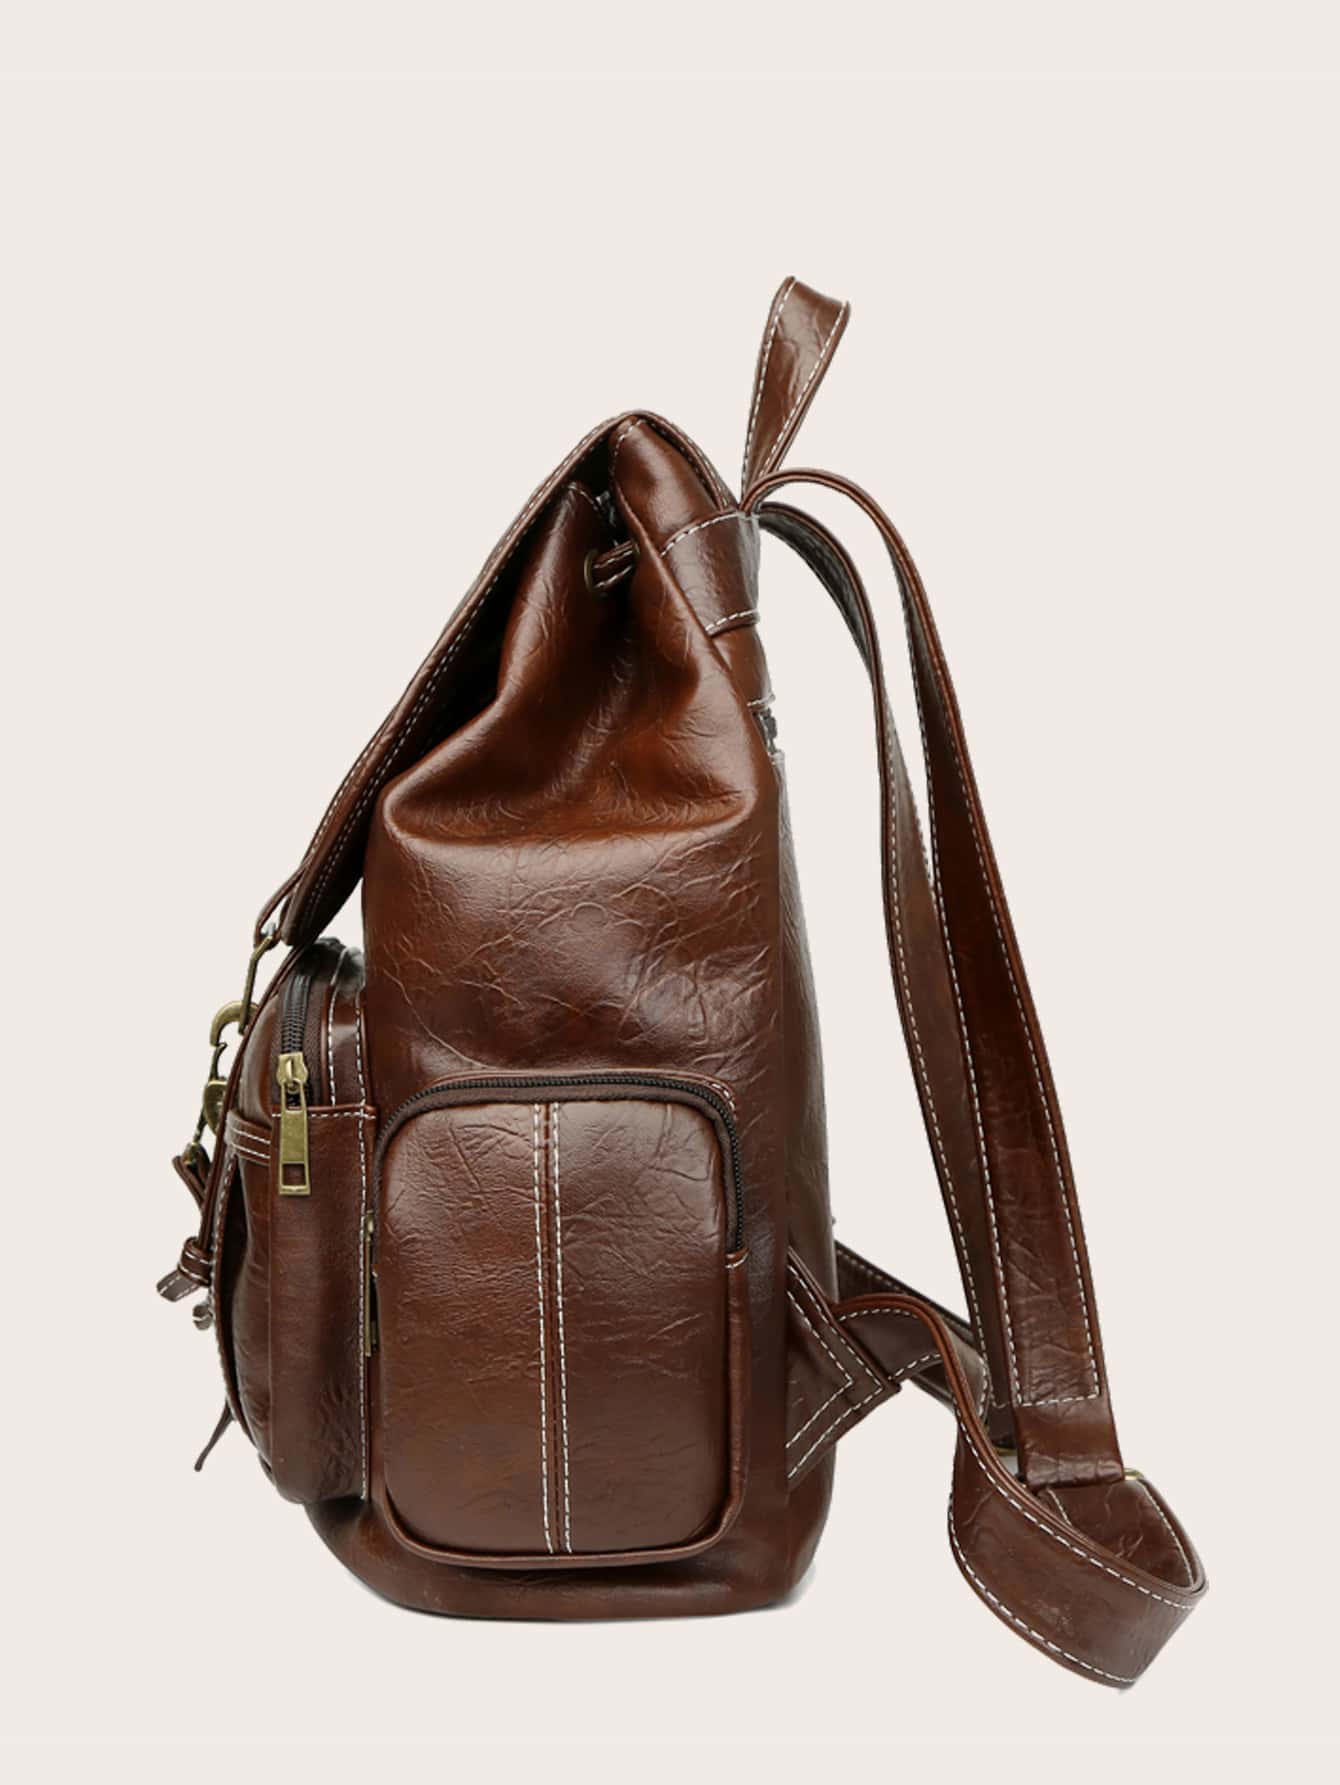 Vintage Design Flap Backpack